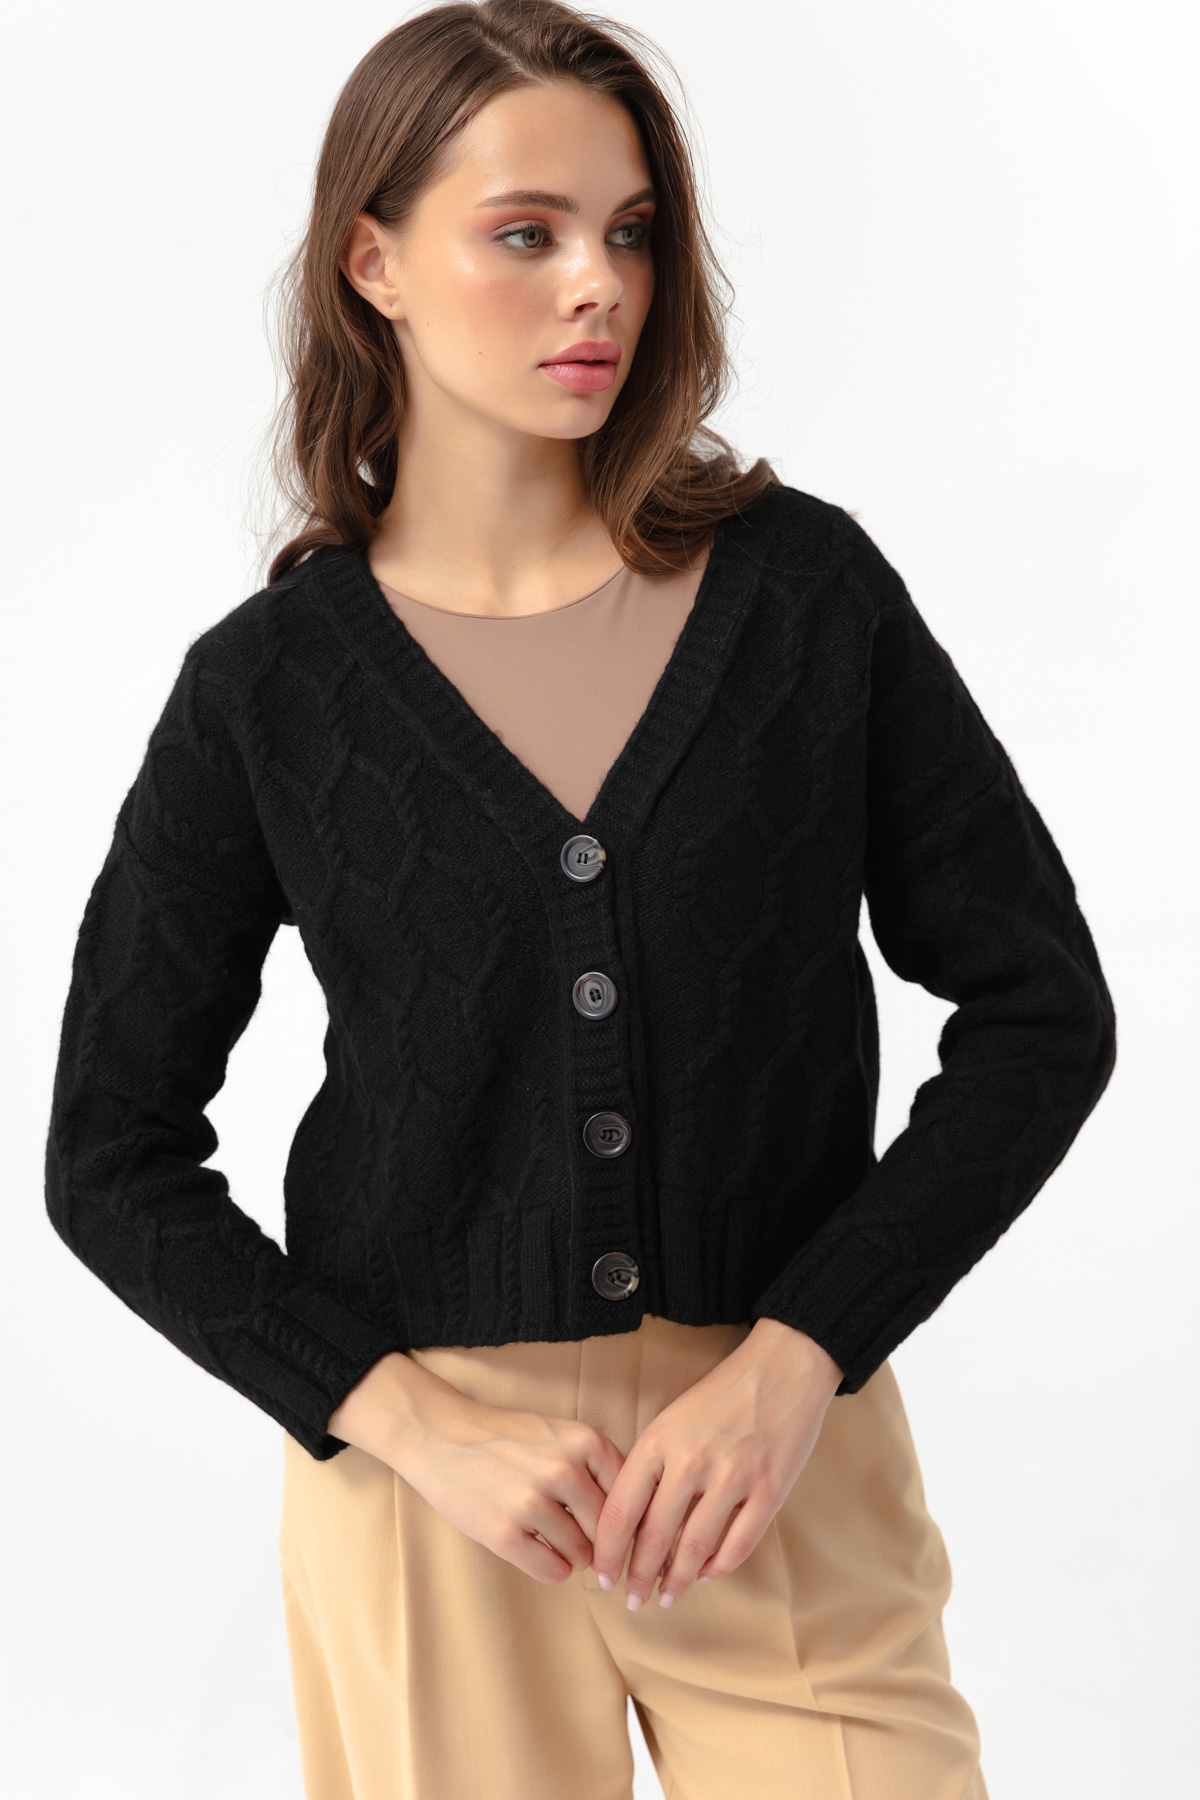 Women's Black Buttoned Knitwear Cardigan